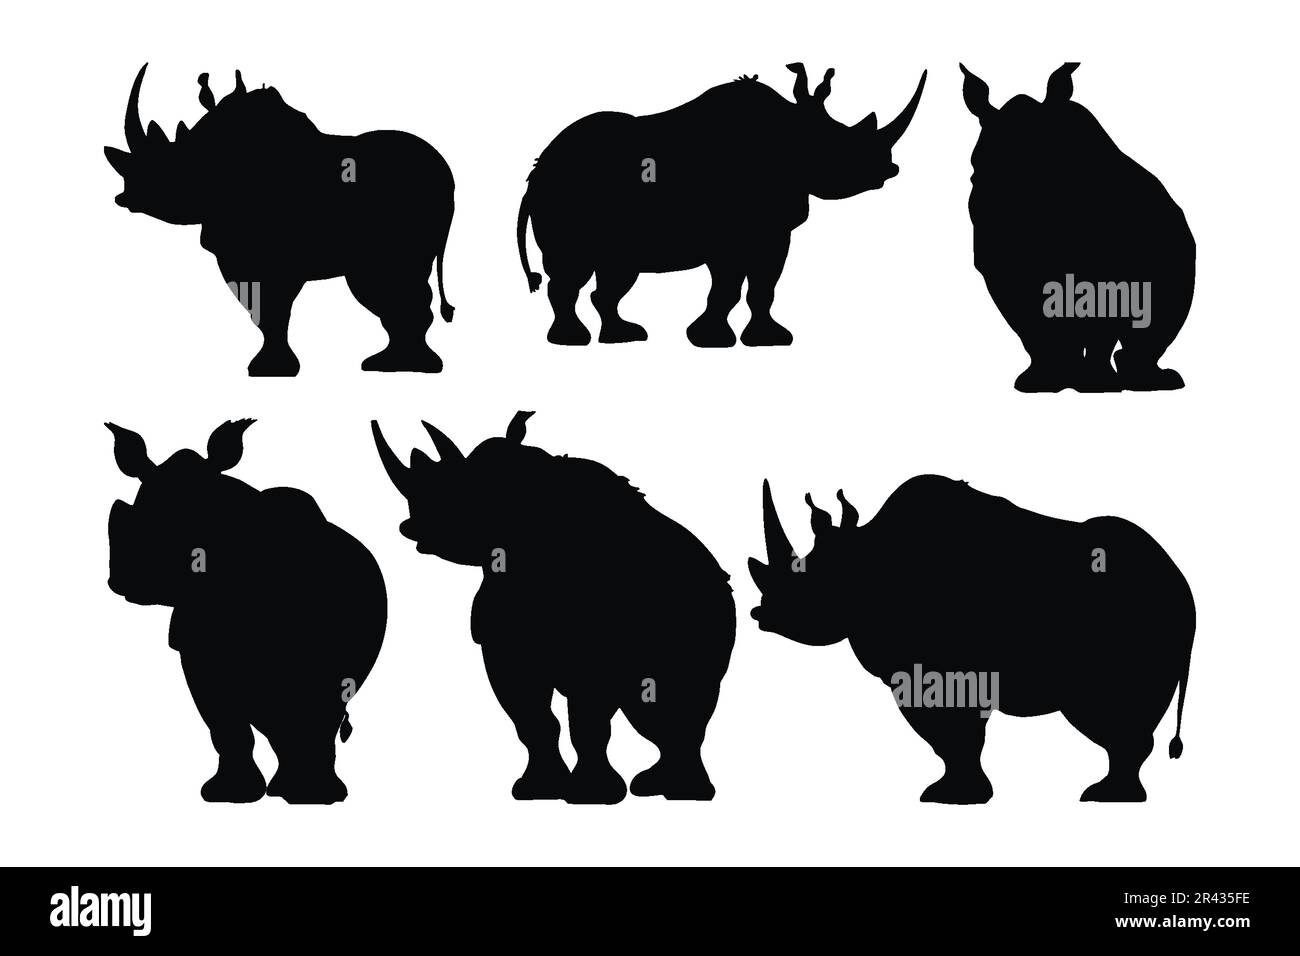 Rhino de pie en diferentes posiciones, silueta conjunto vector. Colección de silueta de rinoceronte adulto sobre un fondo blanco. Animales salvajes peligrosos como la cadera Ilustración del Vector